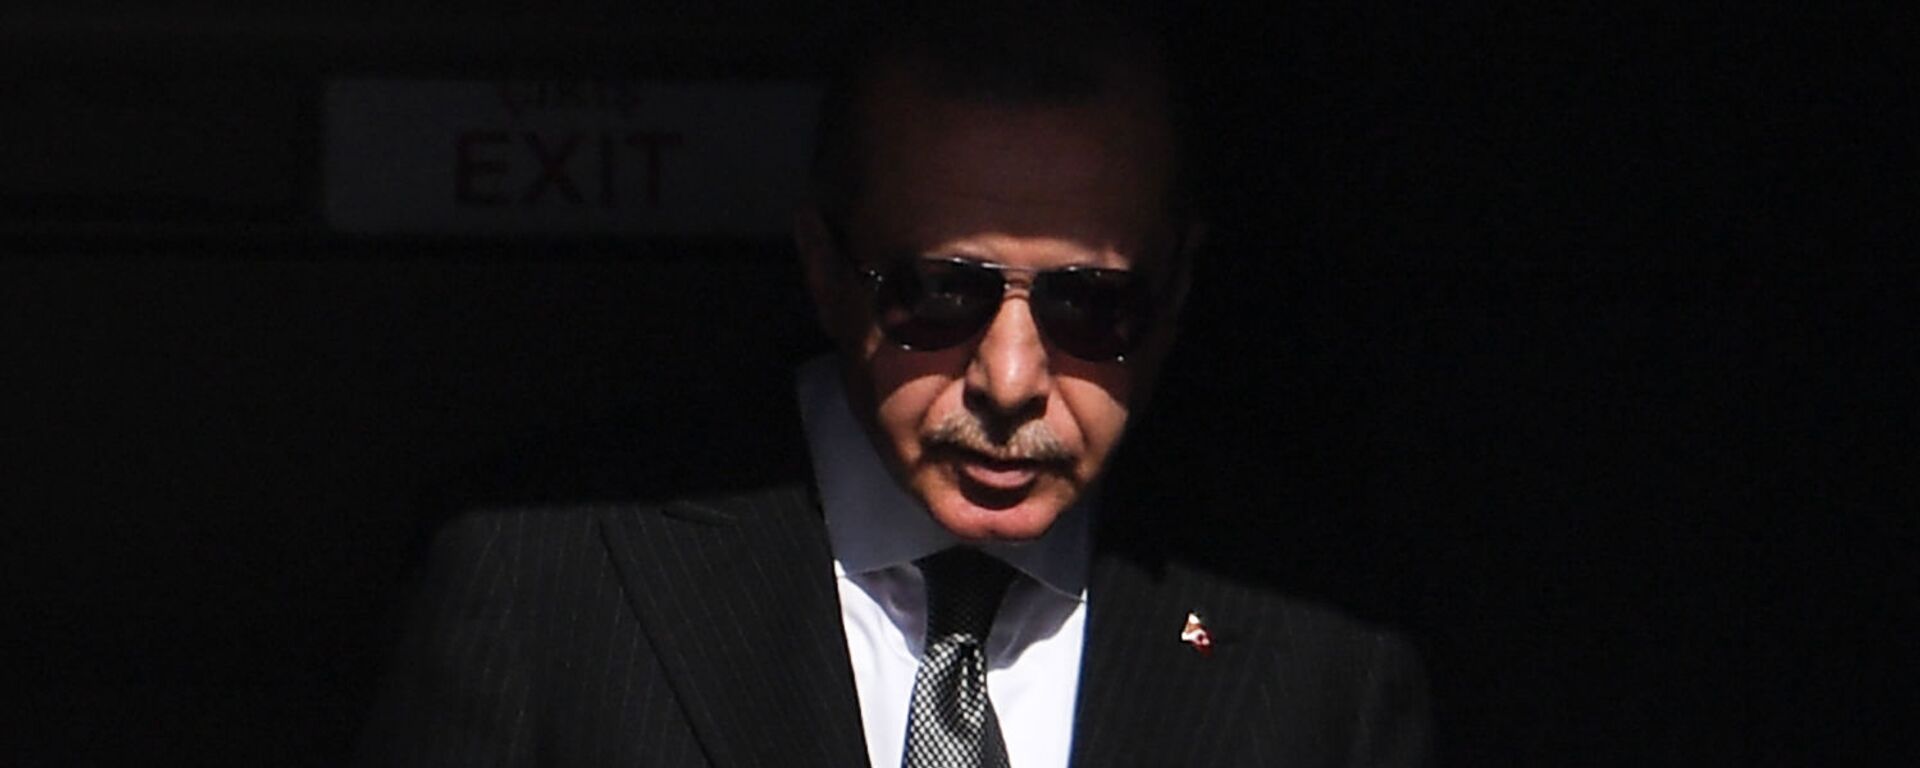 Президент Турции Реджеп Тайип Эрдоган прибывает в аэропорт Кельна (29 сентября 2018). Германия - Sputnik Армения, 1920, 14.06.2021